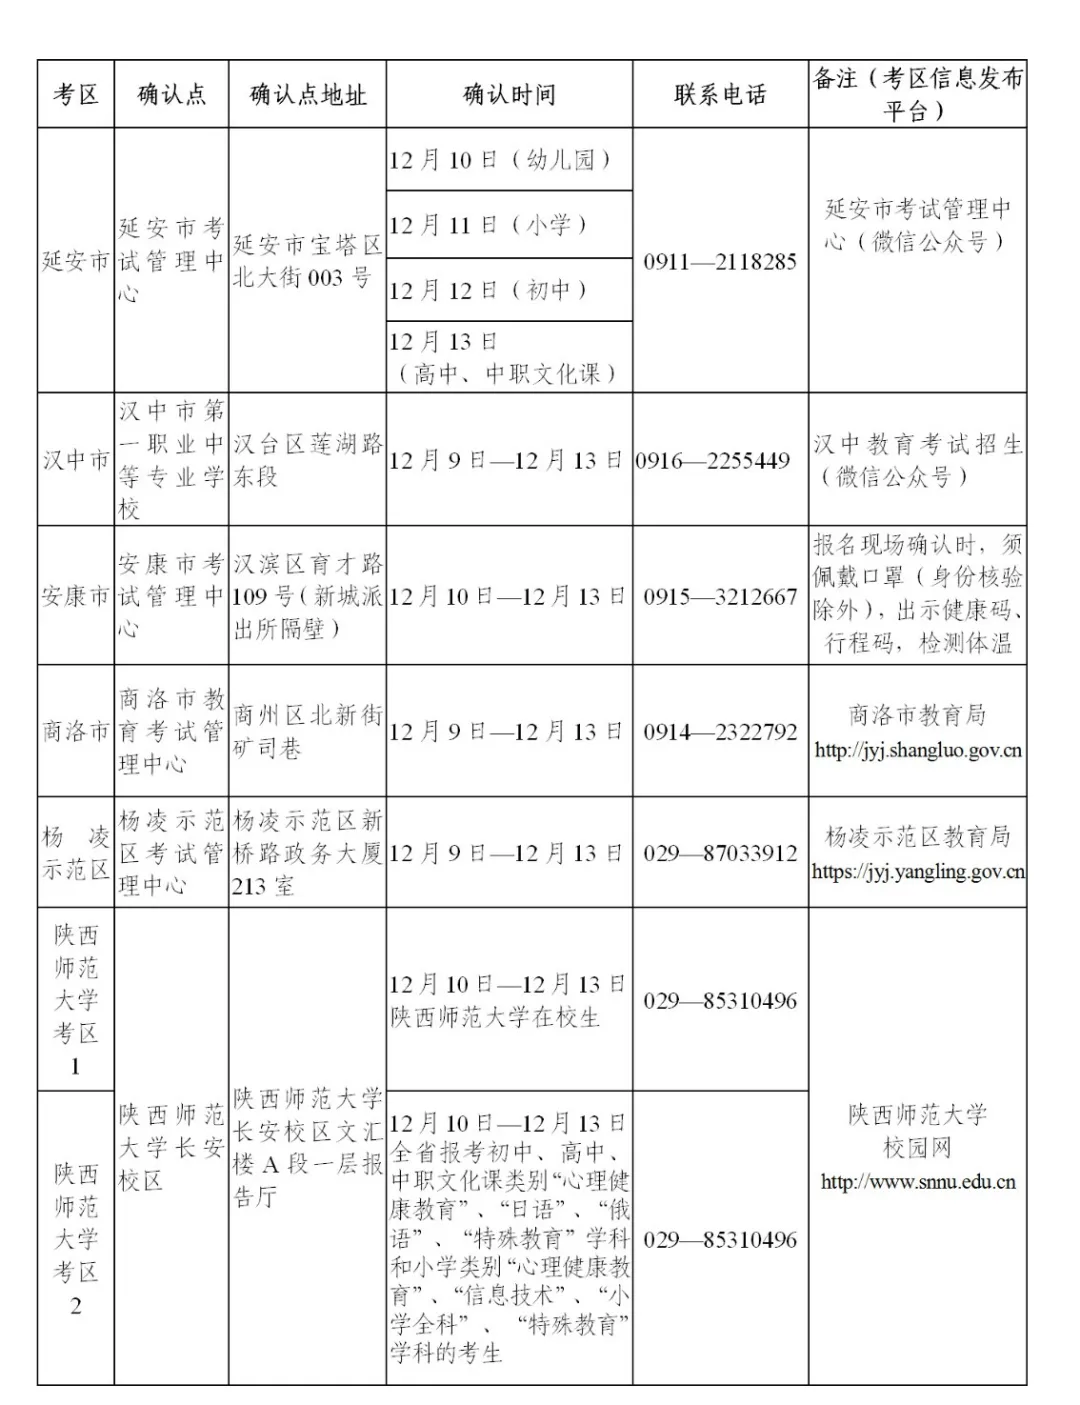 2021年下半年陕西省中小学教师资格考试面试公告